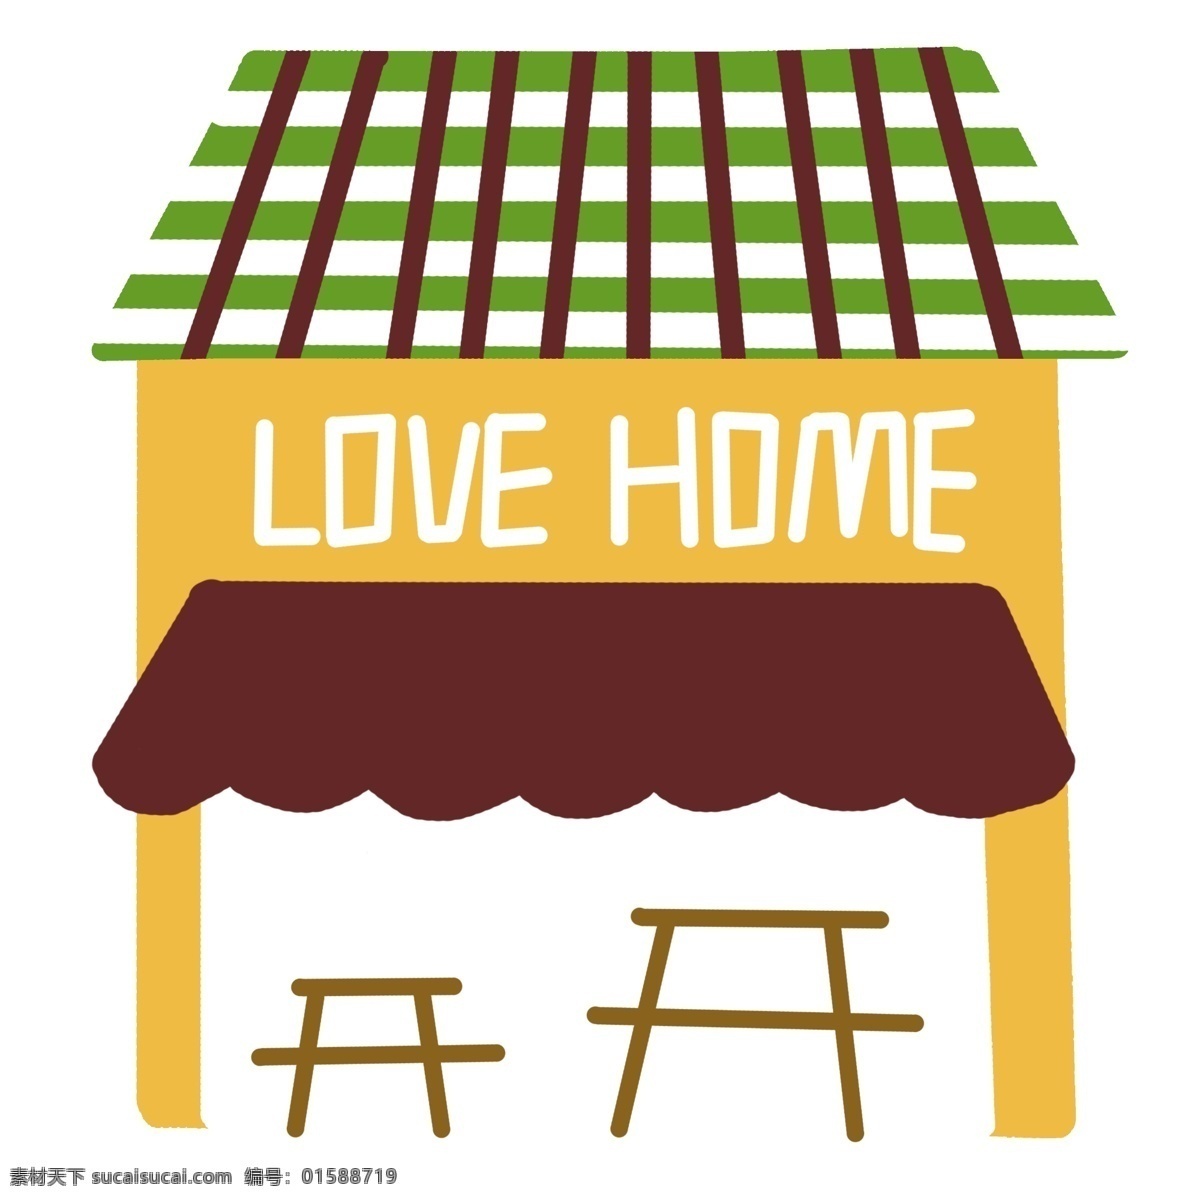 卡通 爱情 房屋 插图 爱情房屋 小房子 卡通房子 椅子 绿色房顶 卡通房屋 房子插图